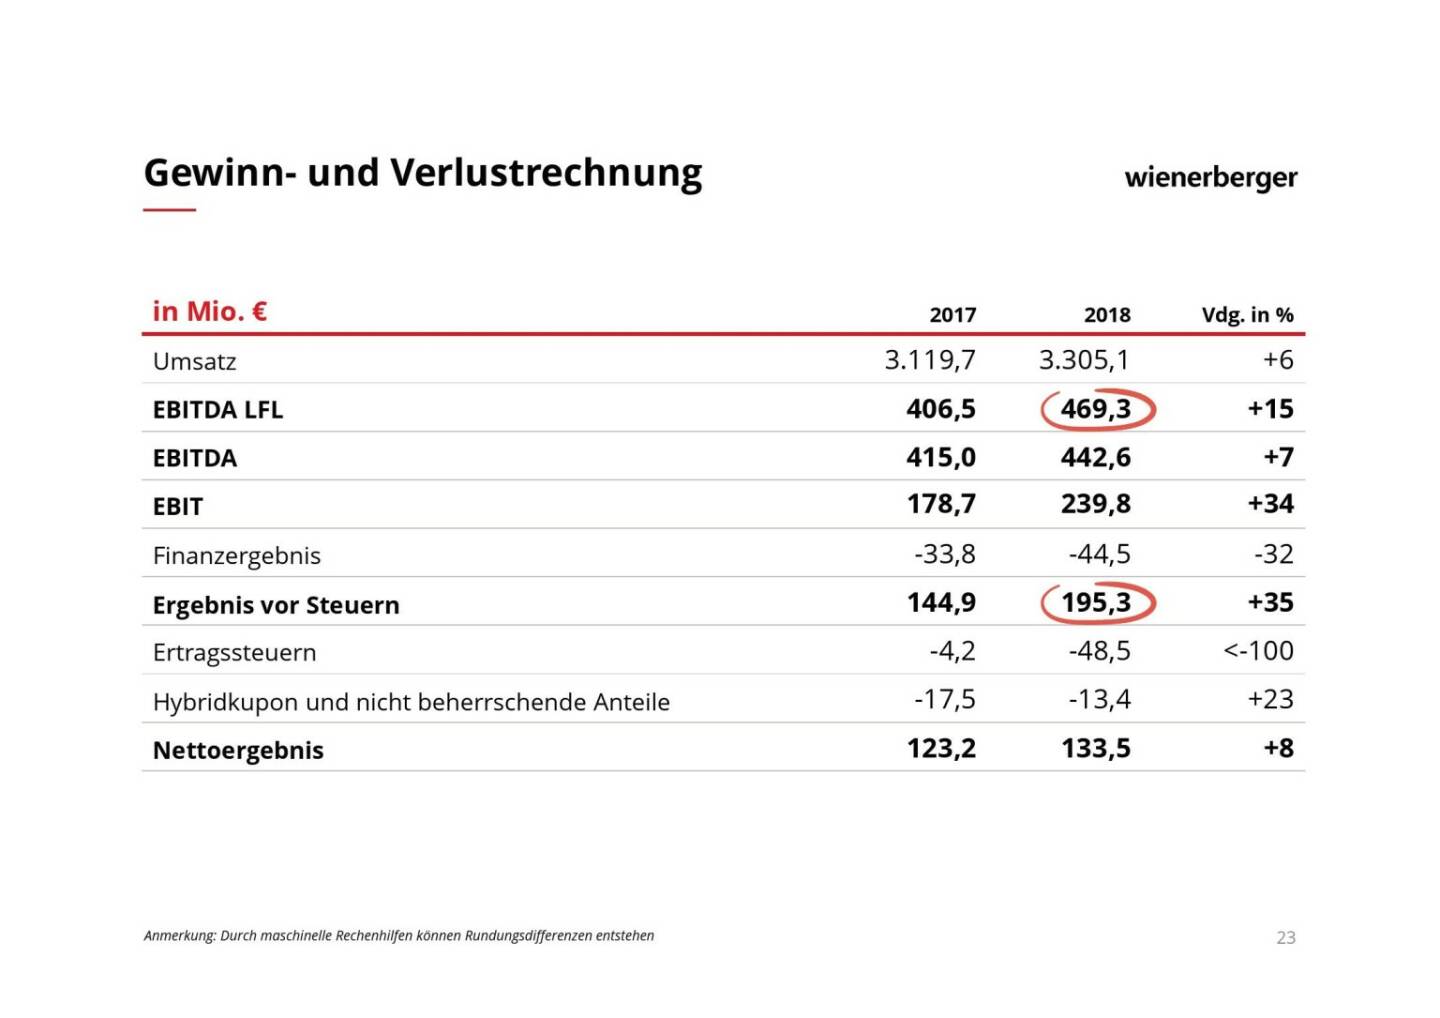 Wienerberger - Gewinn- und Verlustrechnung